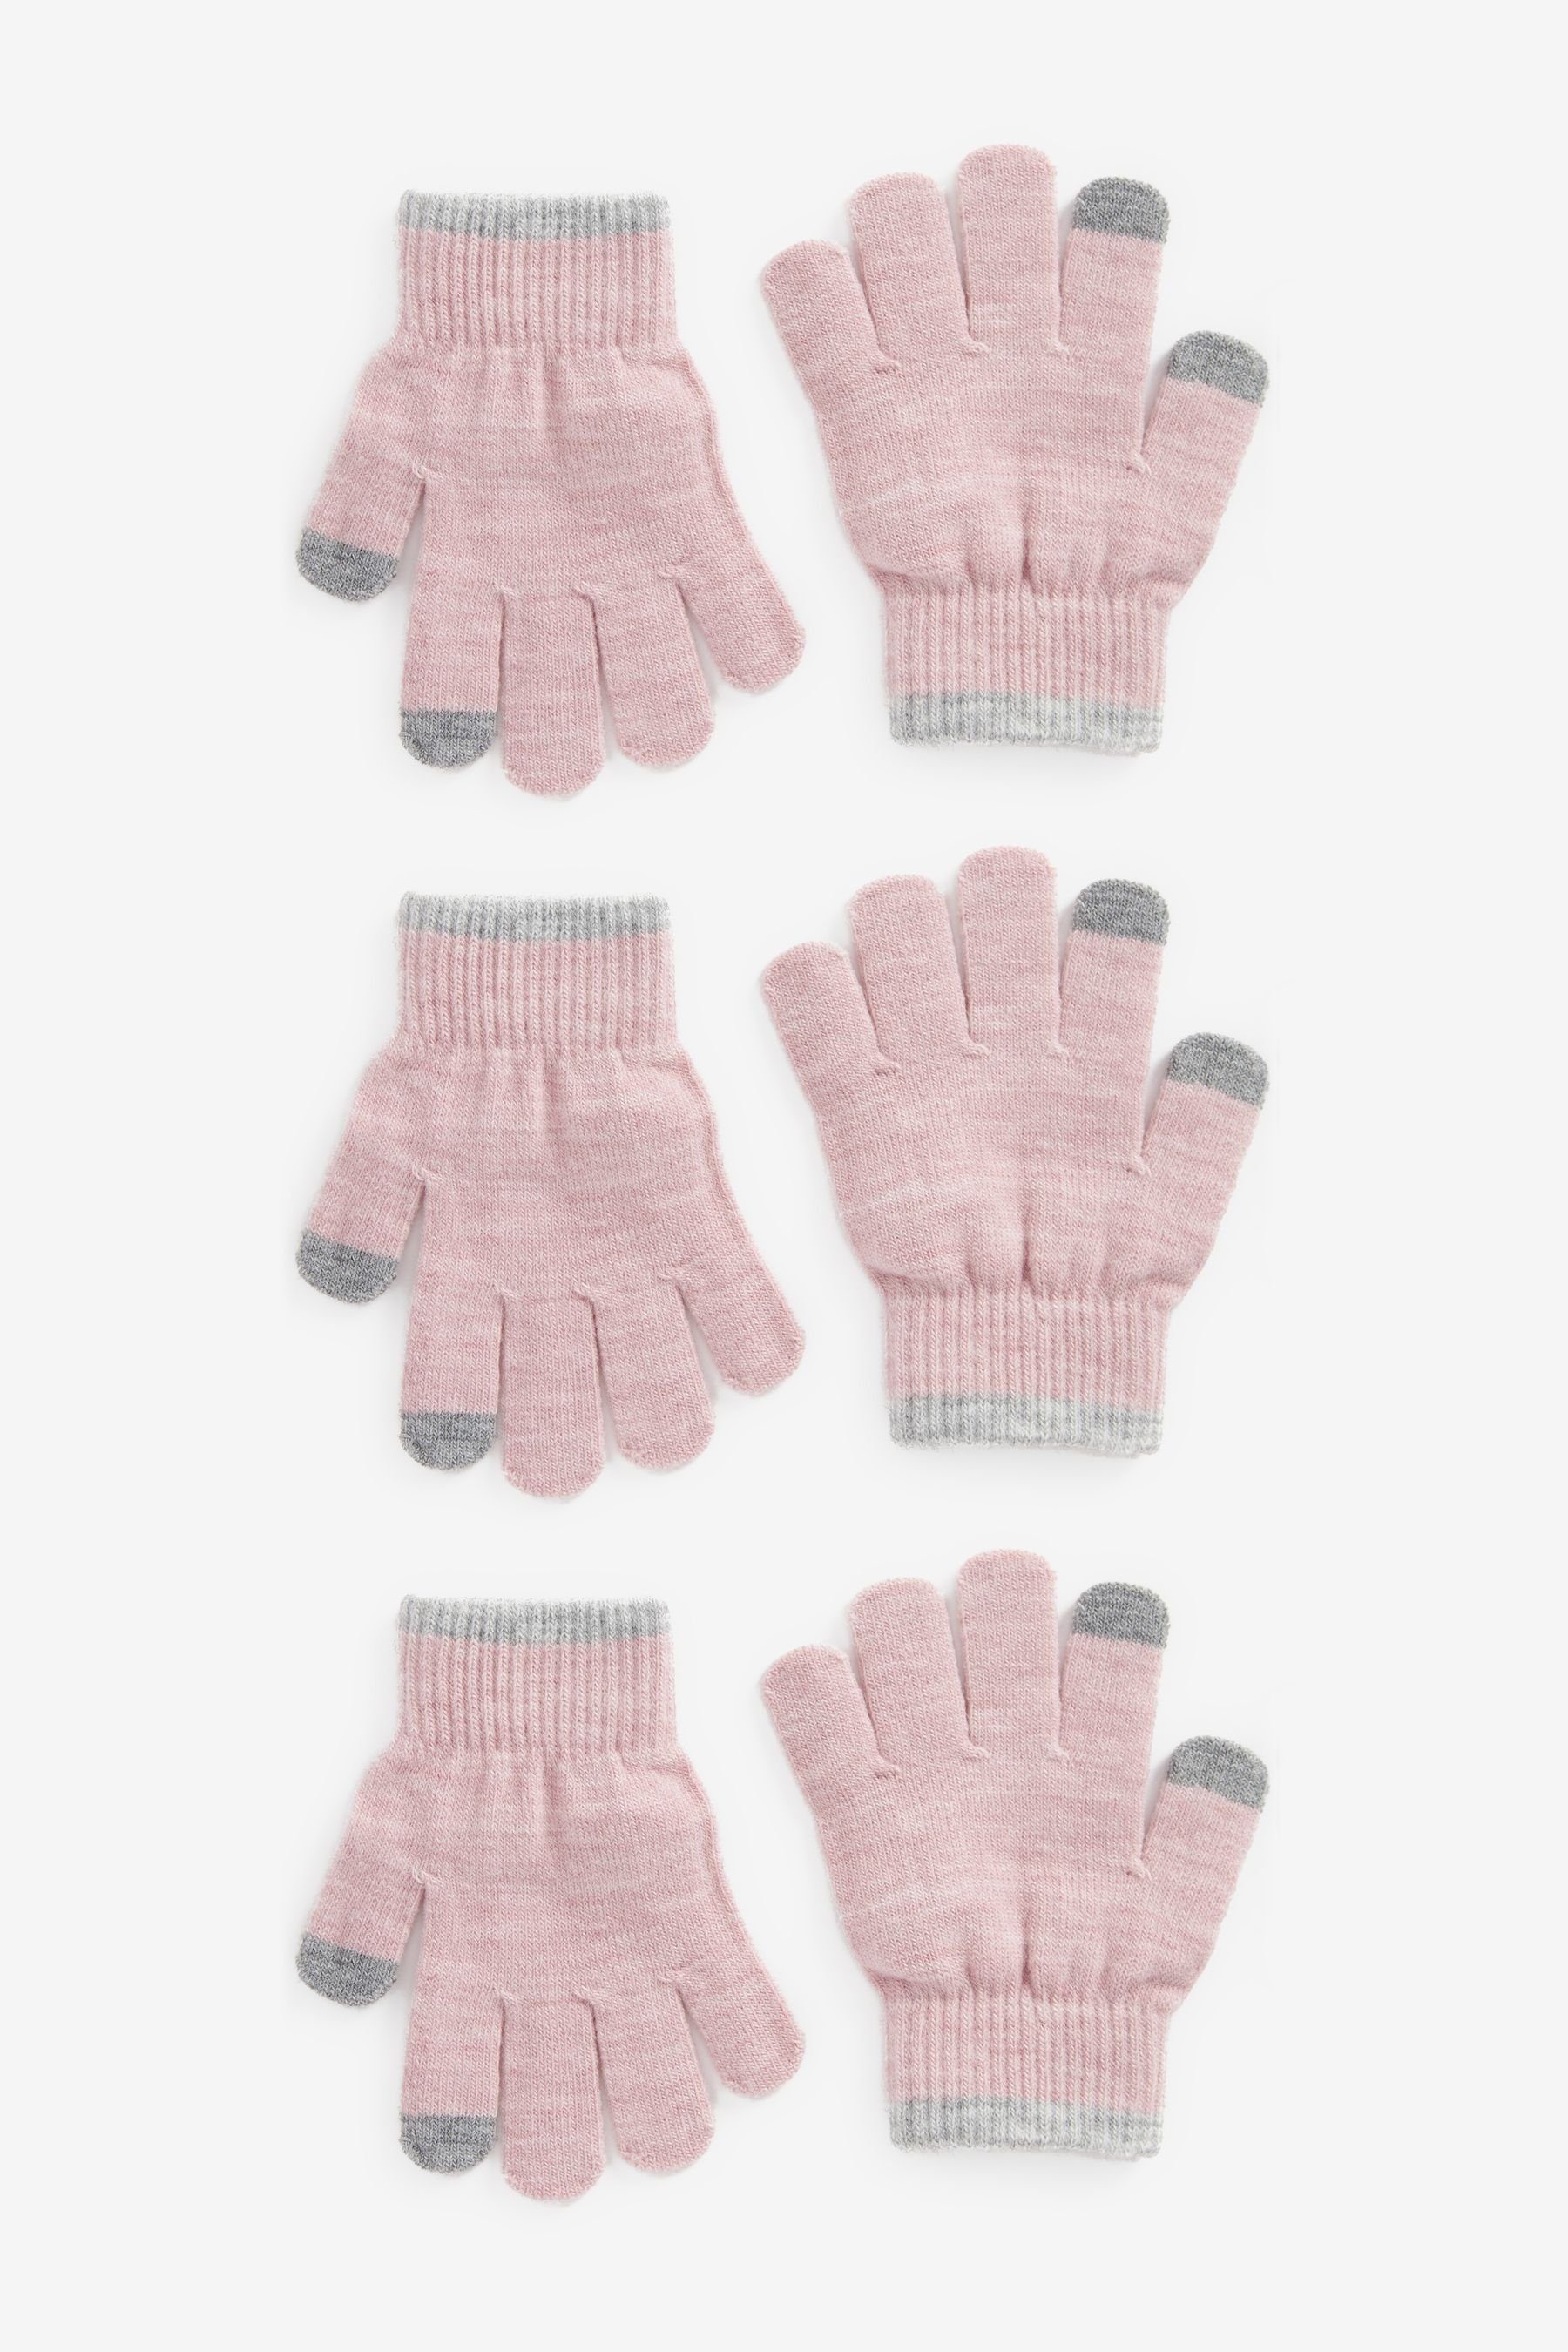 Next Magic Strickhandschuhe 3er-Pack Touch-Tip-Handschuhe Pink